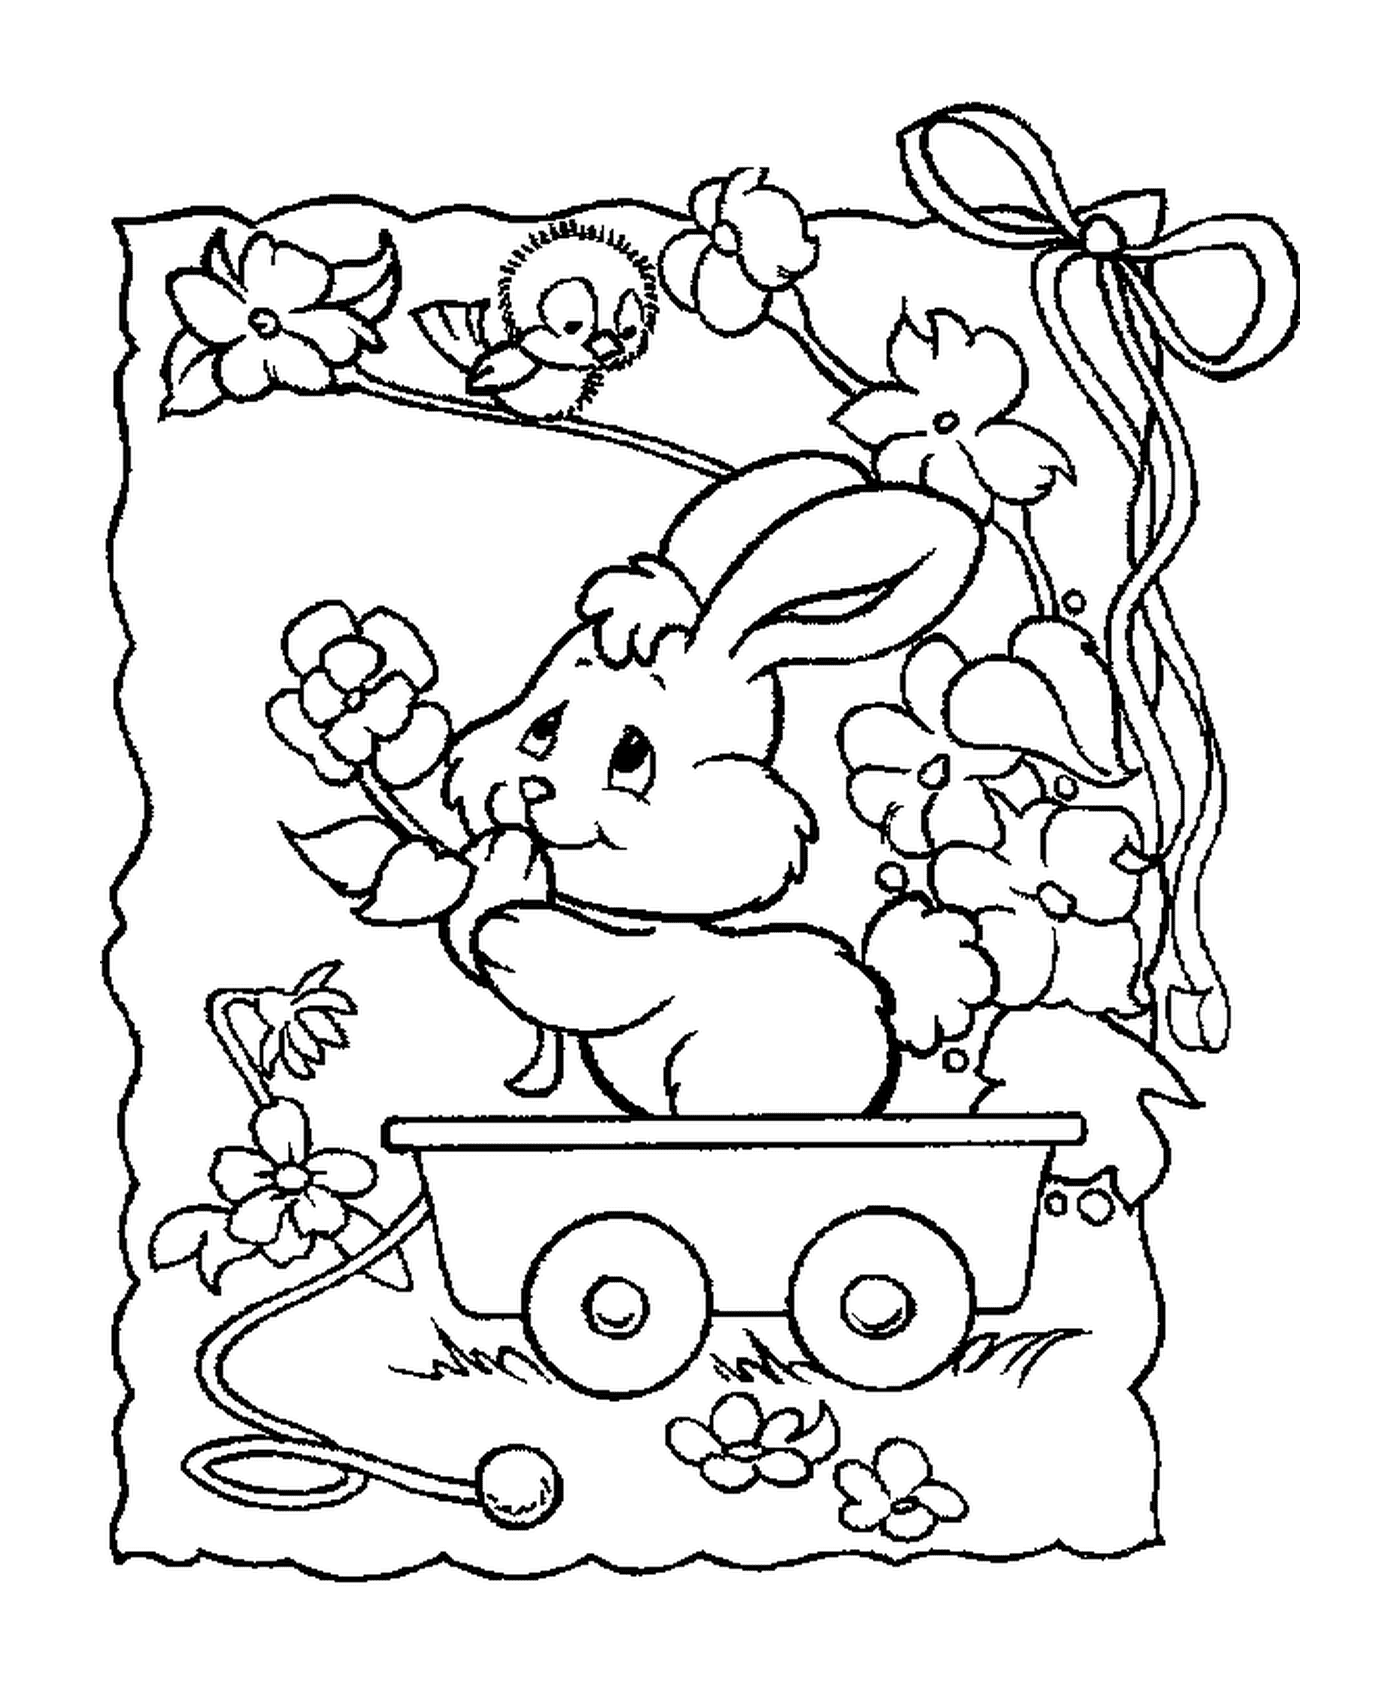  A rabbit sitting in a wagon 